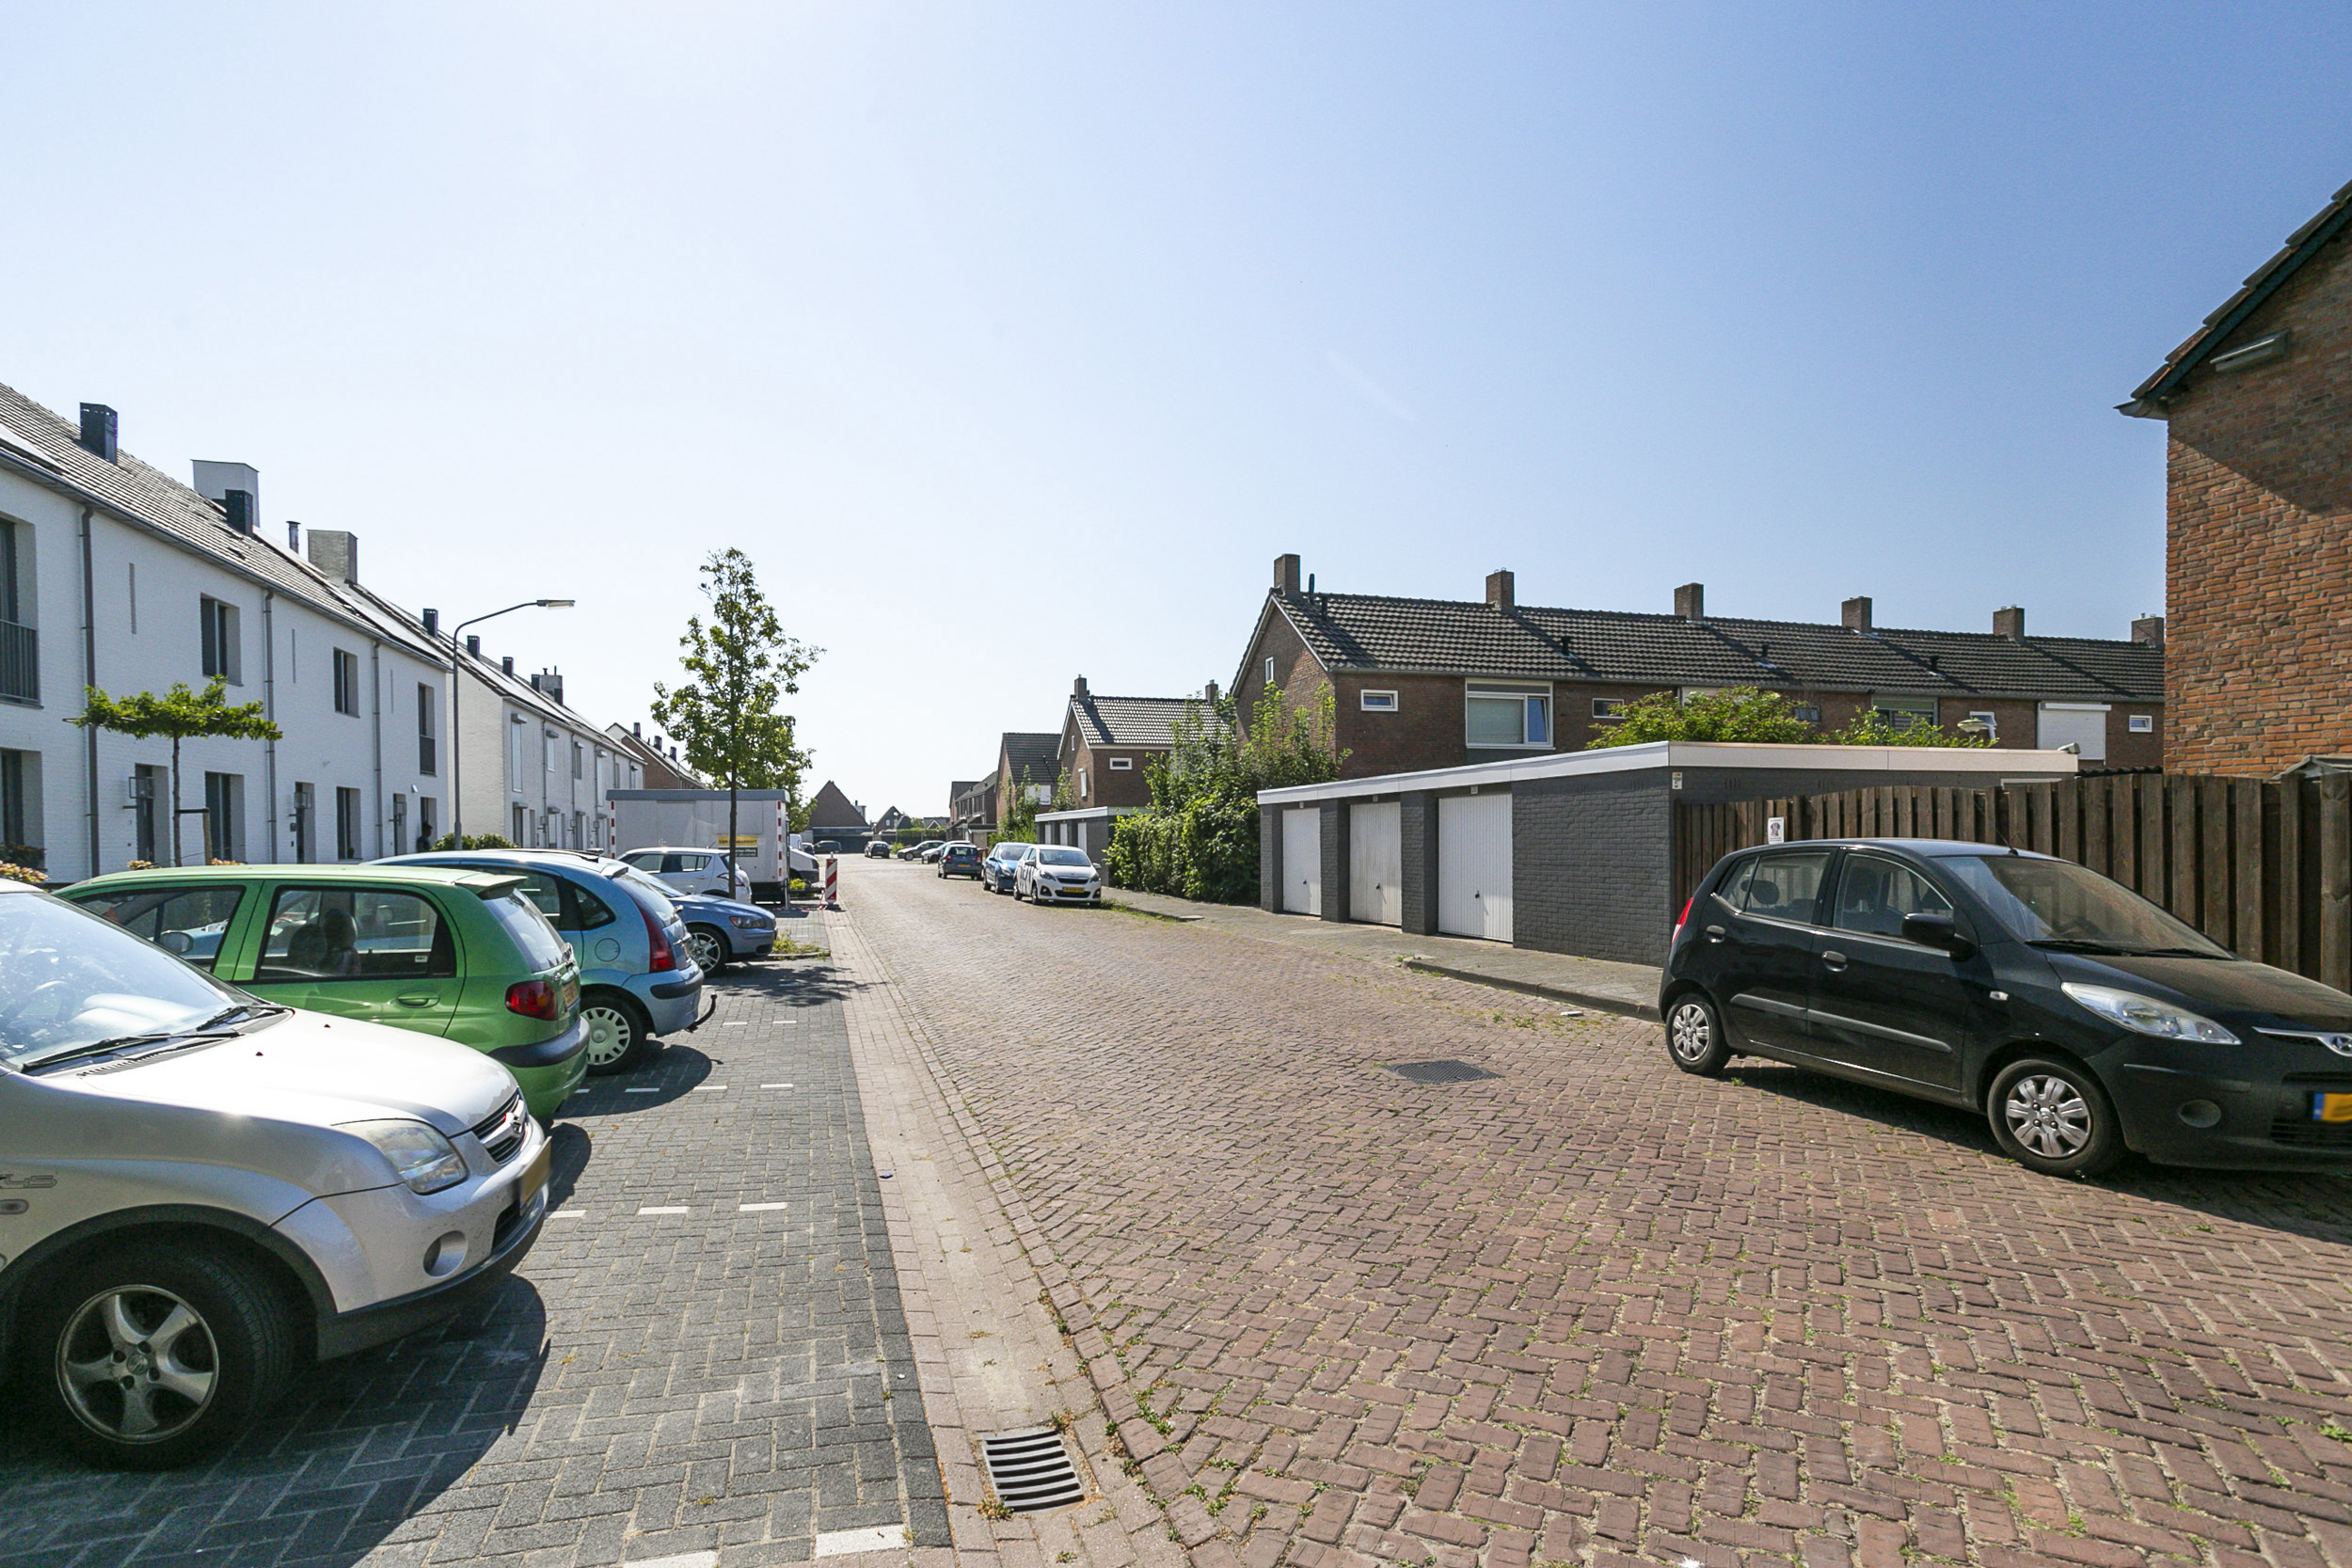 Vermeerstraat 24, 4793 AK Fijnaart, Nederland